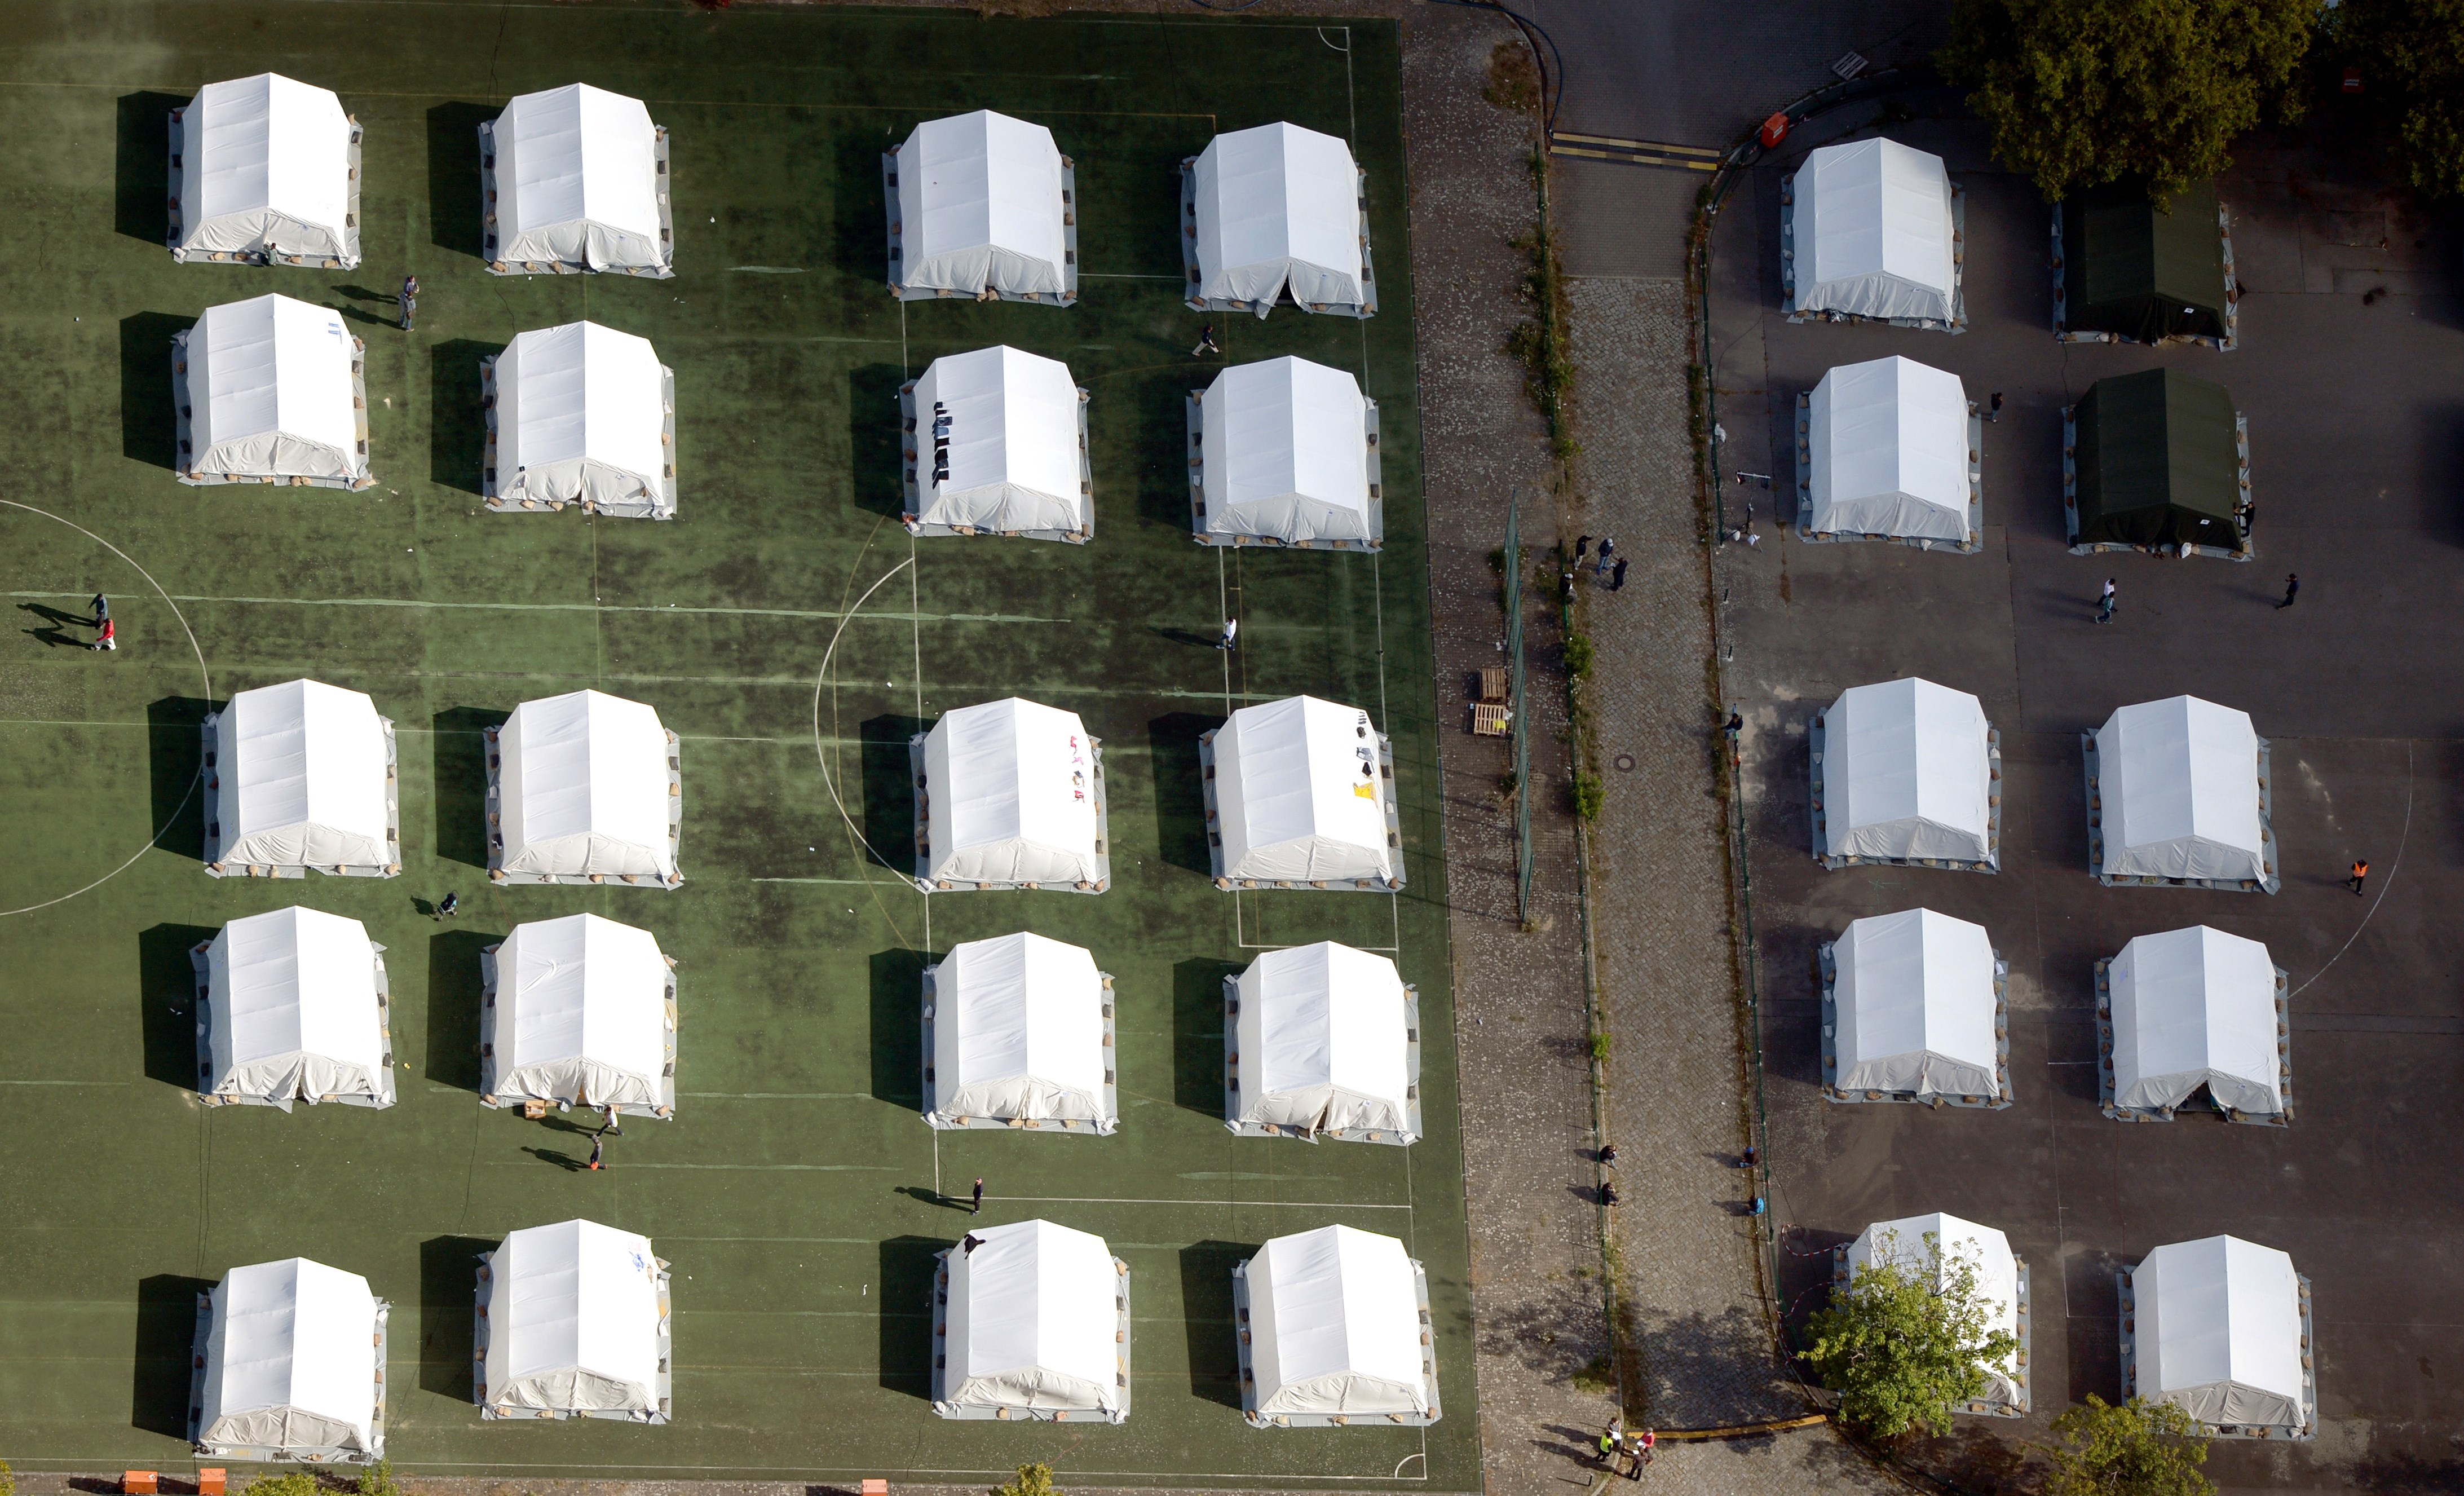 2029 Euro monatlich pro Flüchtling: Warum ist Zelten so teuer?